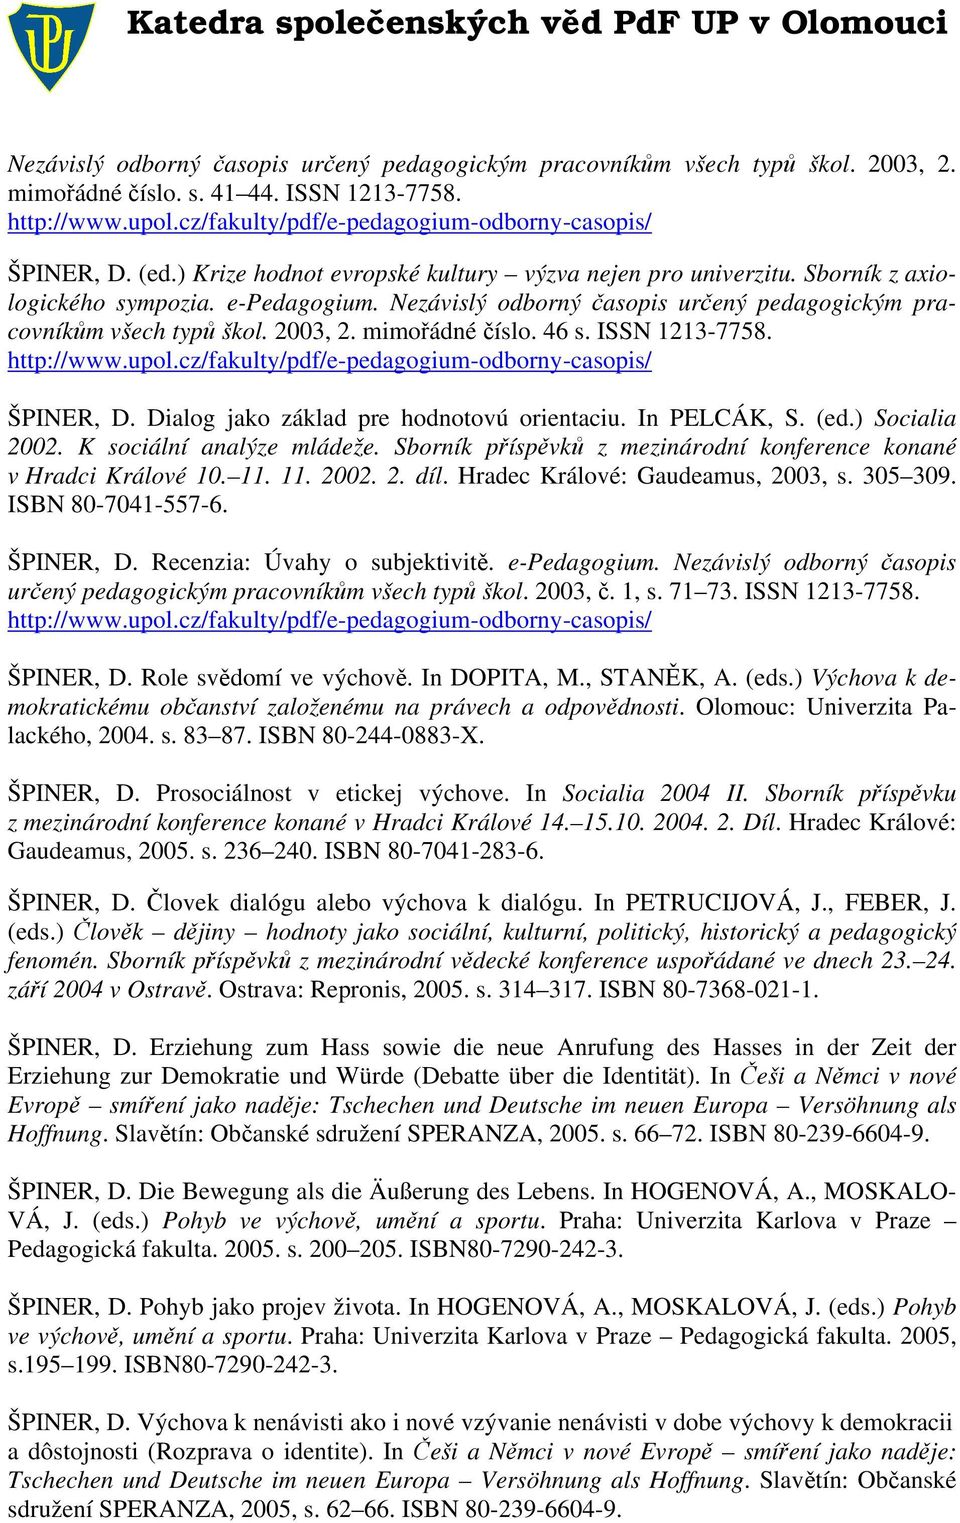 mimořádné číslo. 46 s. ISSN 1213-7758. http://www.upol.cz/fakulty/pdf/e-pedagogium-odborny-casopis/ ŠPINER, D. Dialog jako základ pre hodnotovú orientaciu. In PELCÁK, S. (ed.) Socialia 2002.